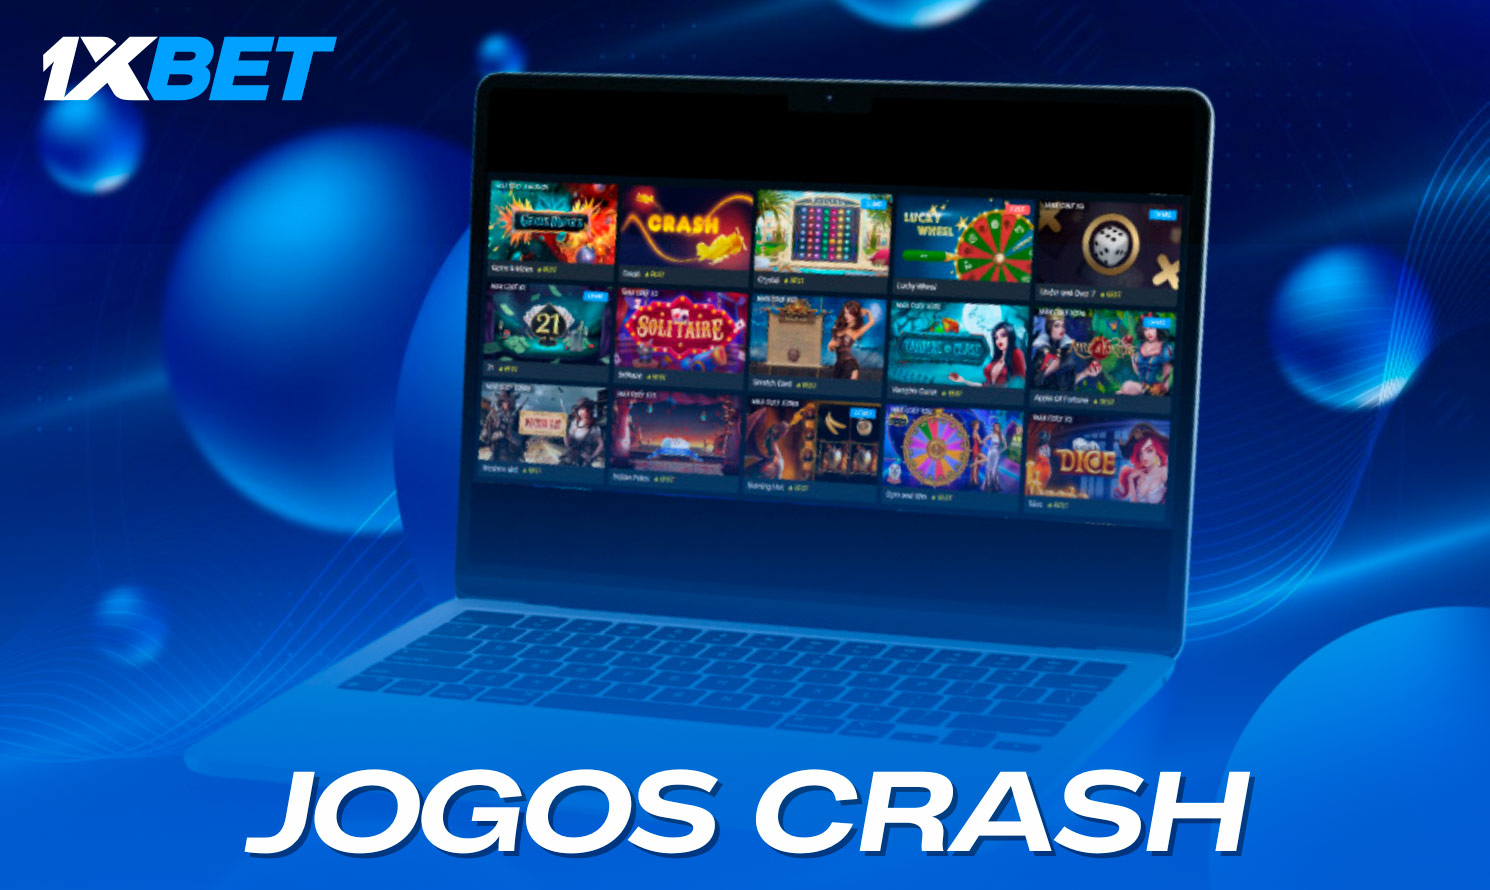 Jogadores de Moçambique encontrarão jogos de crash famosos na 1xbet